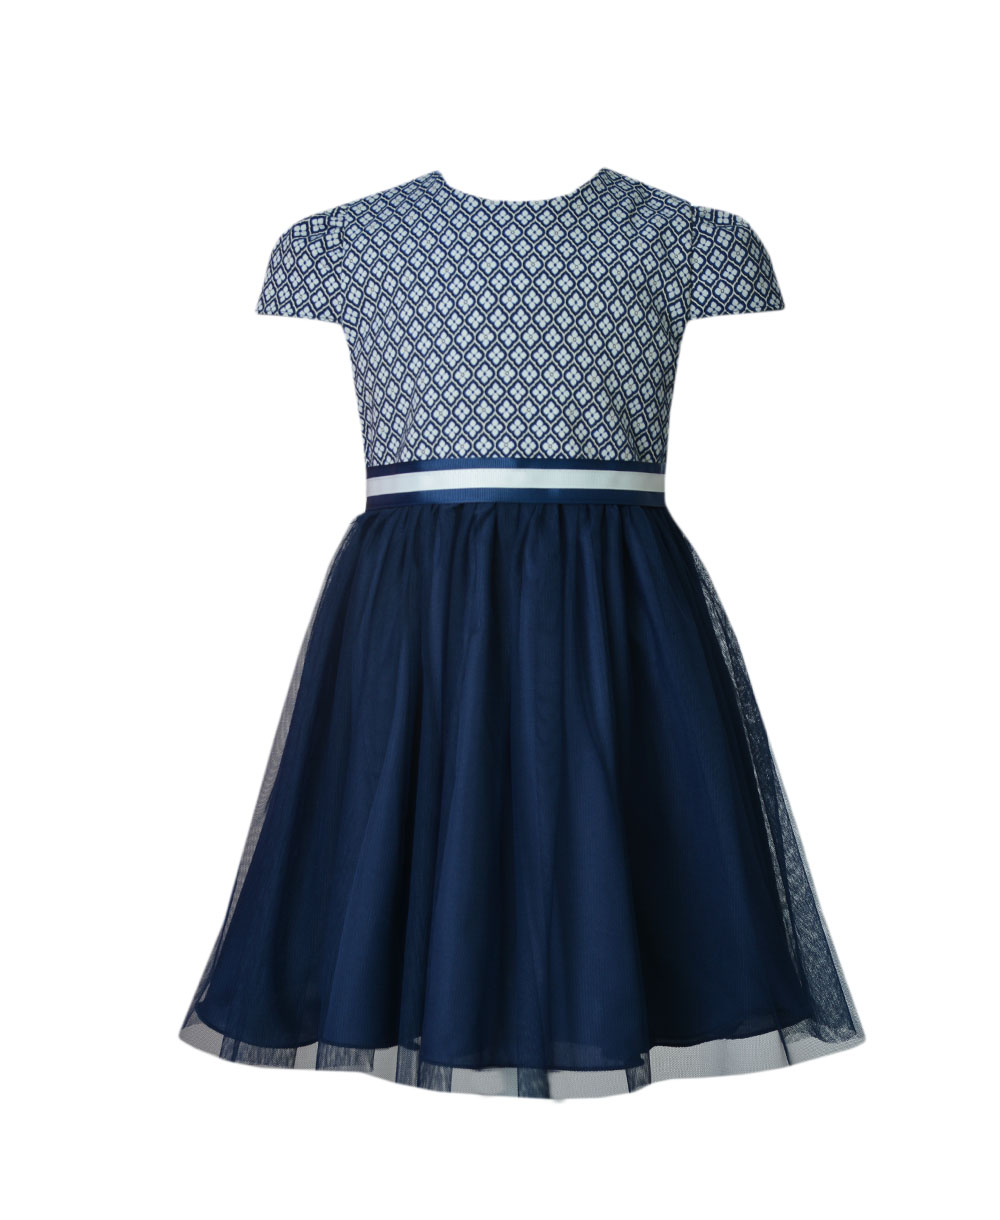 Dívčí šaty Daisy 2 modro bílé s tylem Emma